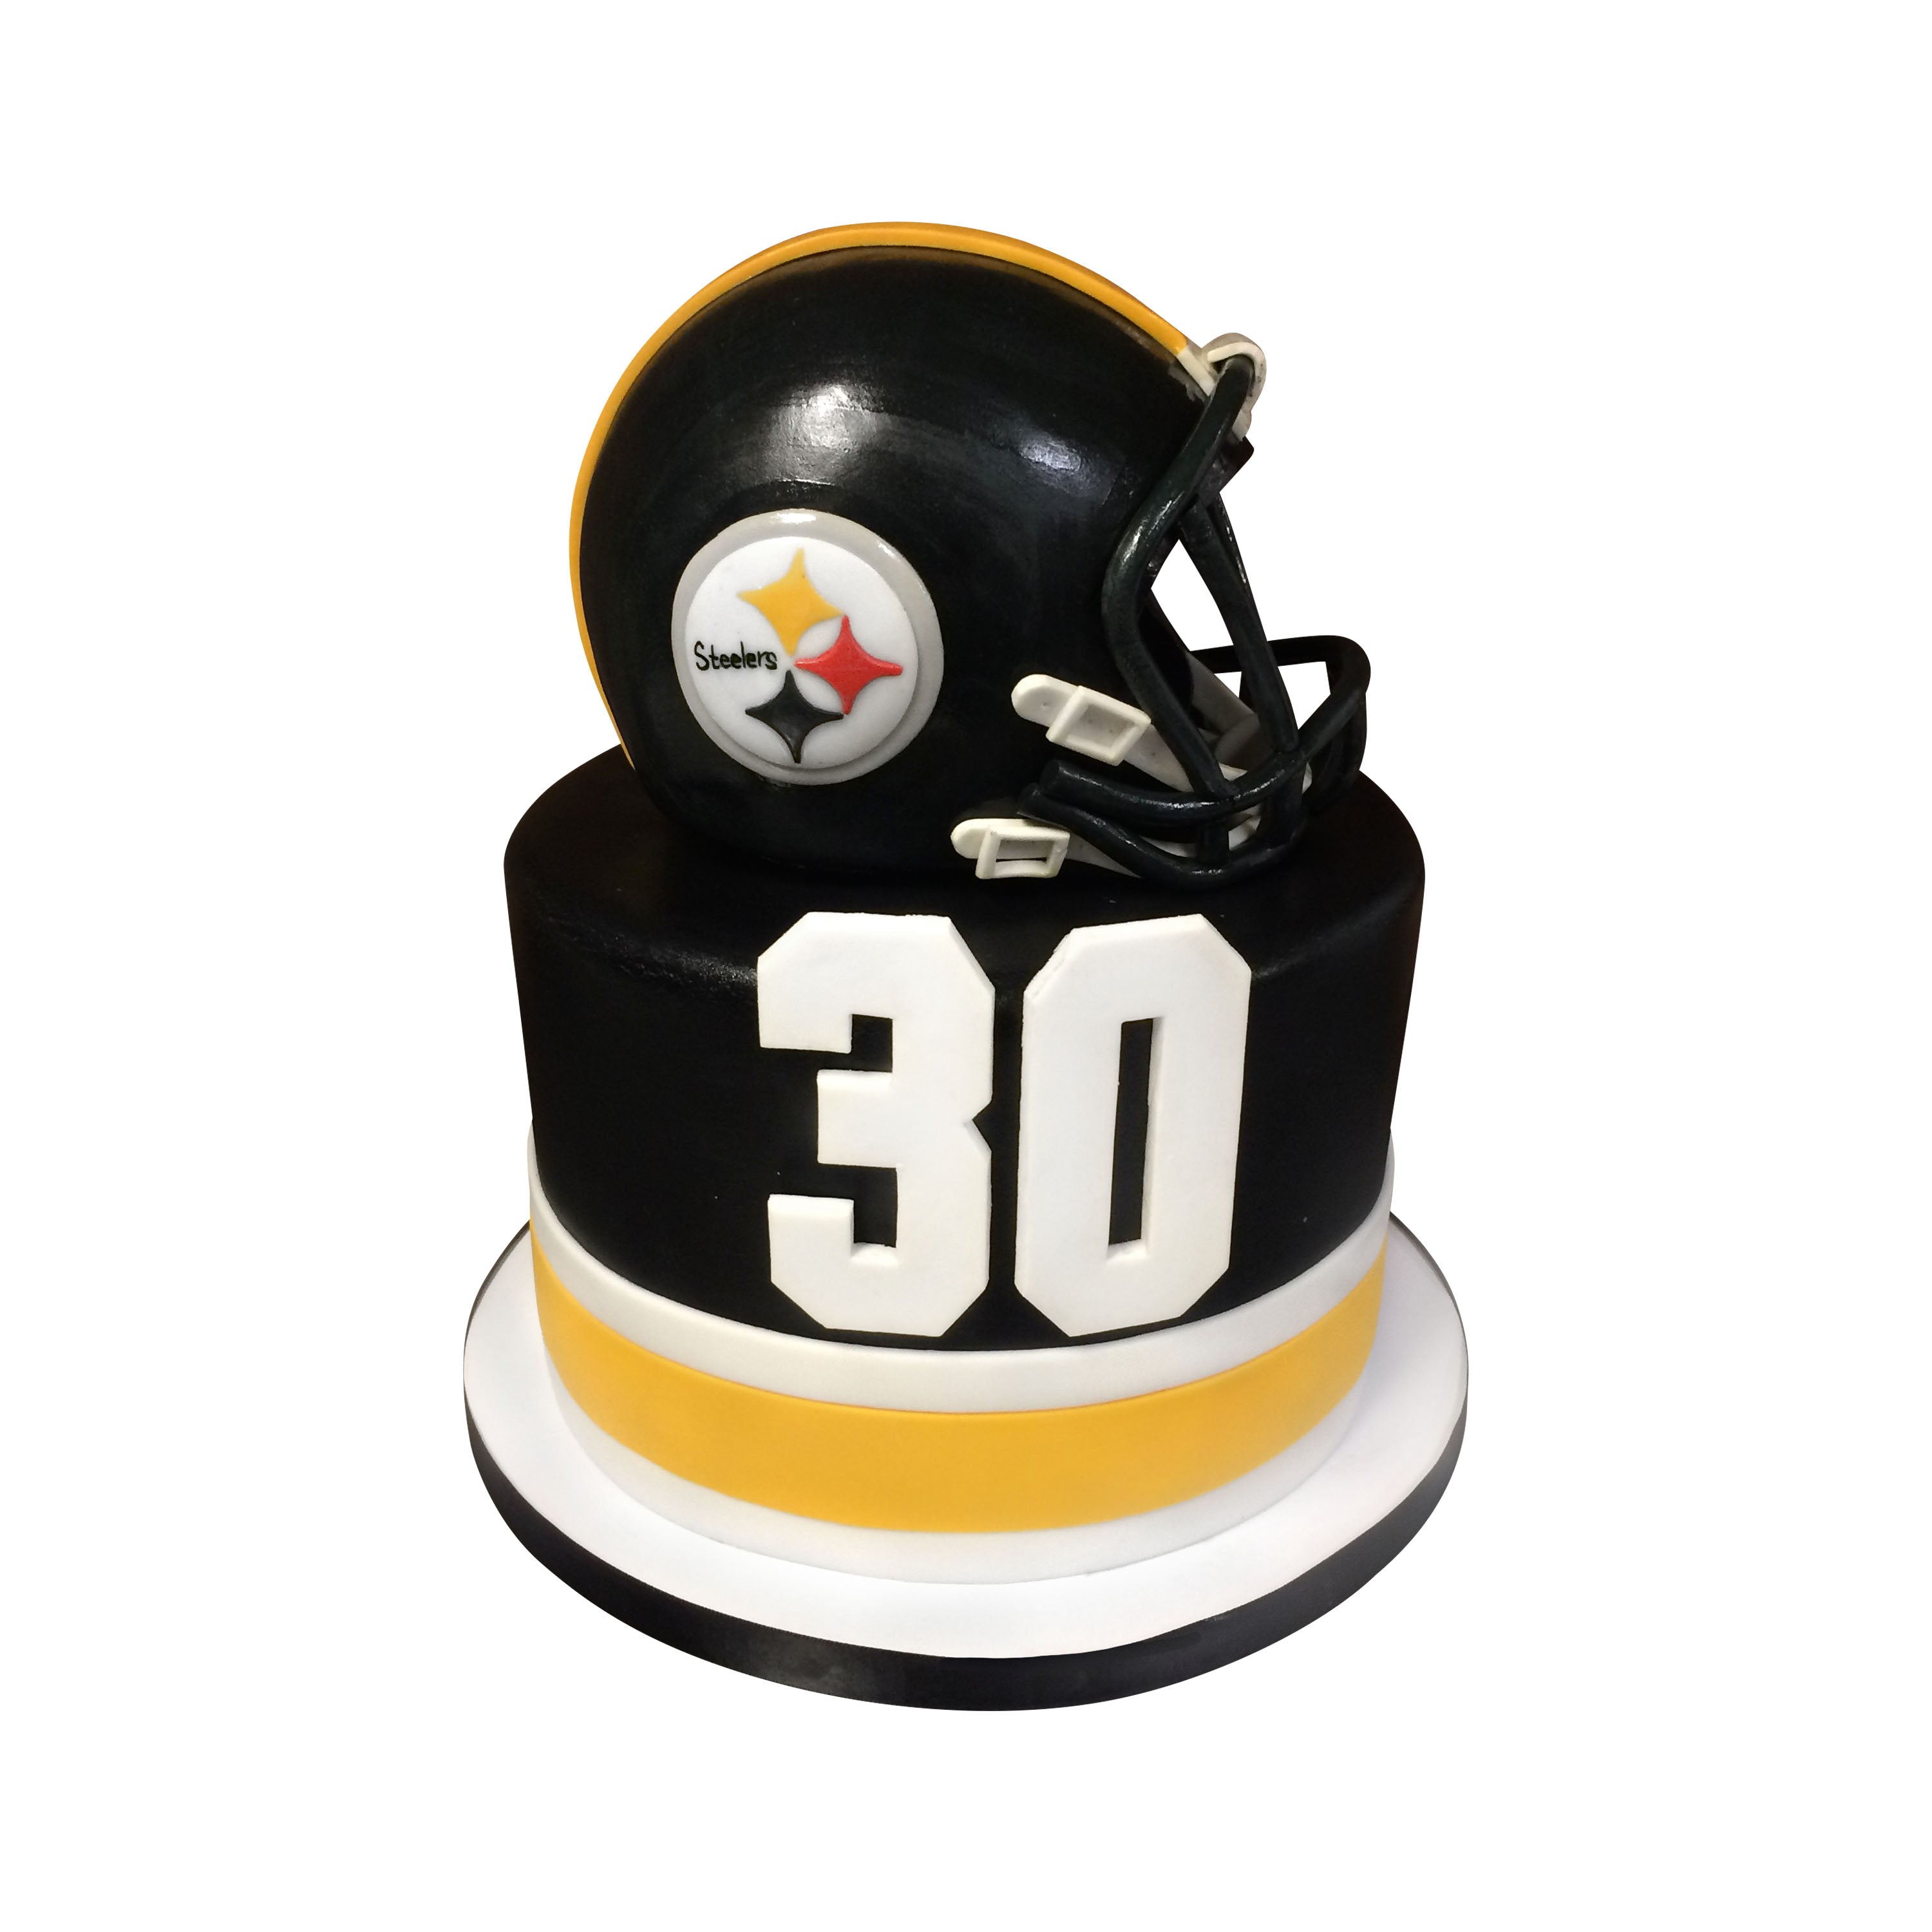 Pittsburgh Steelers cake | Cake designs, Steelers, Grooms cake